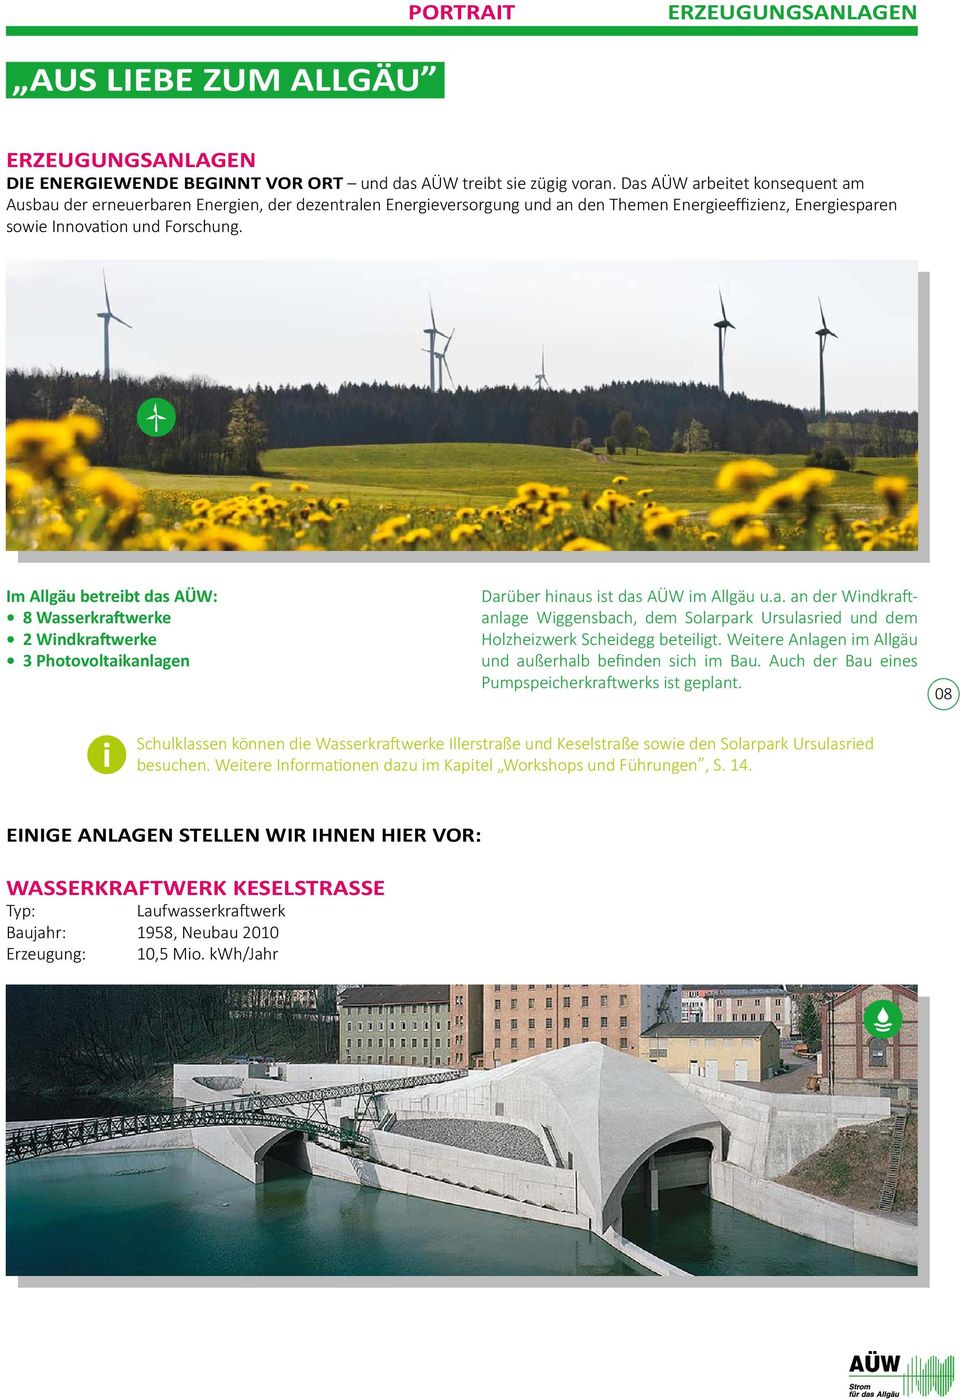 Im Allgäu betreibt das AÜW: 8 Wasserkraftwerke 2 Windkraftwerke 3 Photovoltaikanlagen Darüber hinaus ist das AÜW im Allgäu u.a. an der Windkra anlage Wiggensbach, dem Solarpark Ursulasried und dem Holzheizwerk Scheidegg beteiligt.